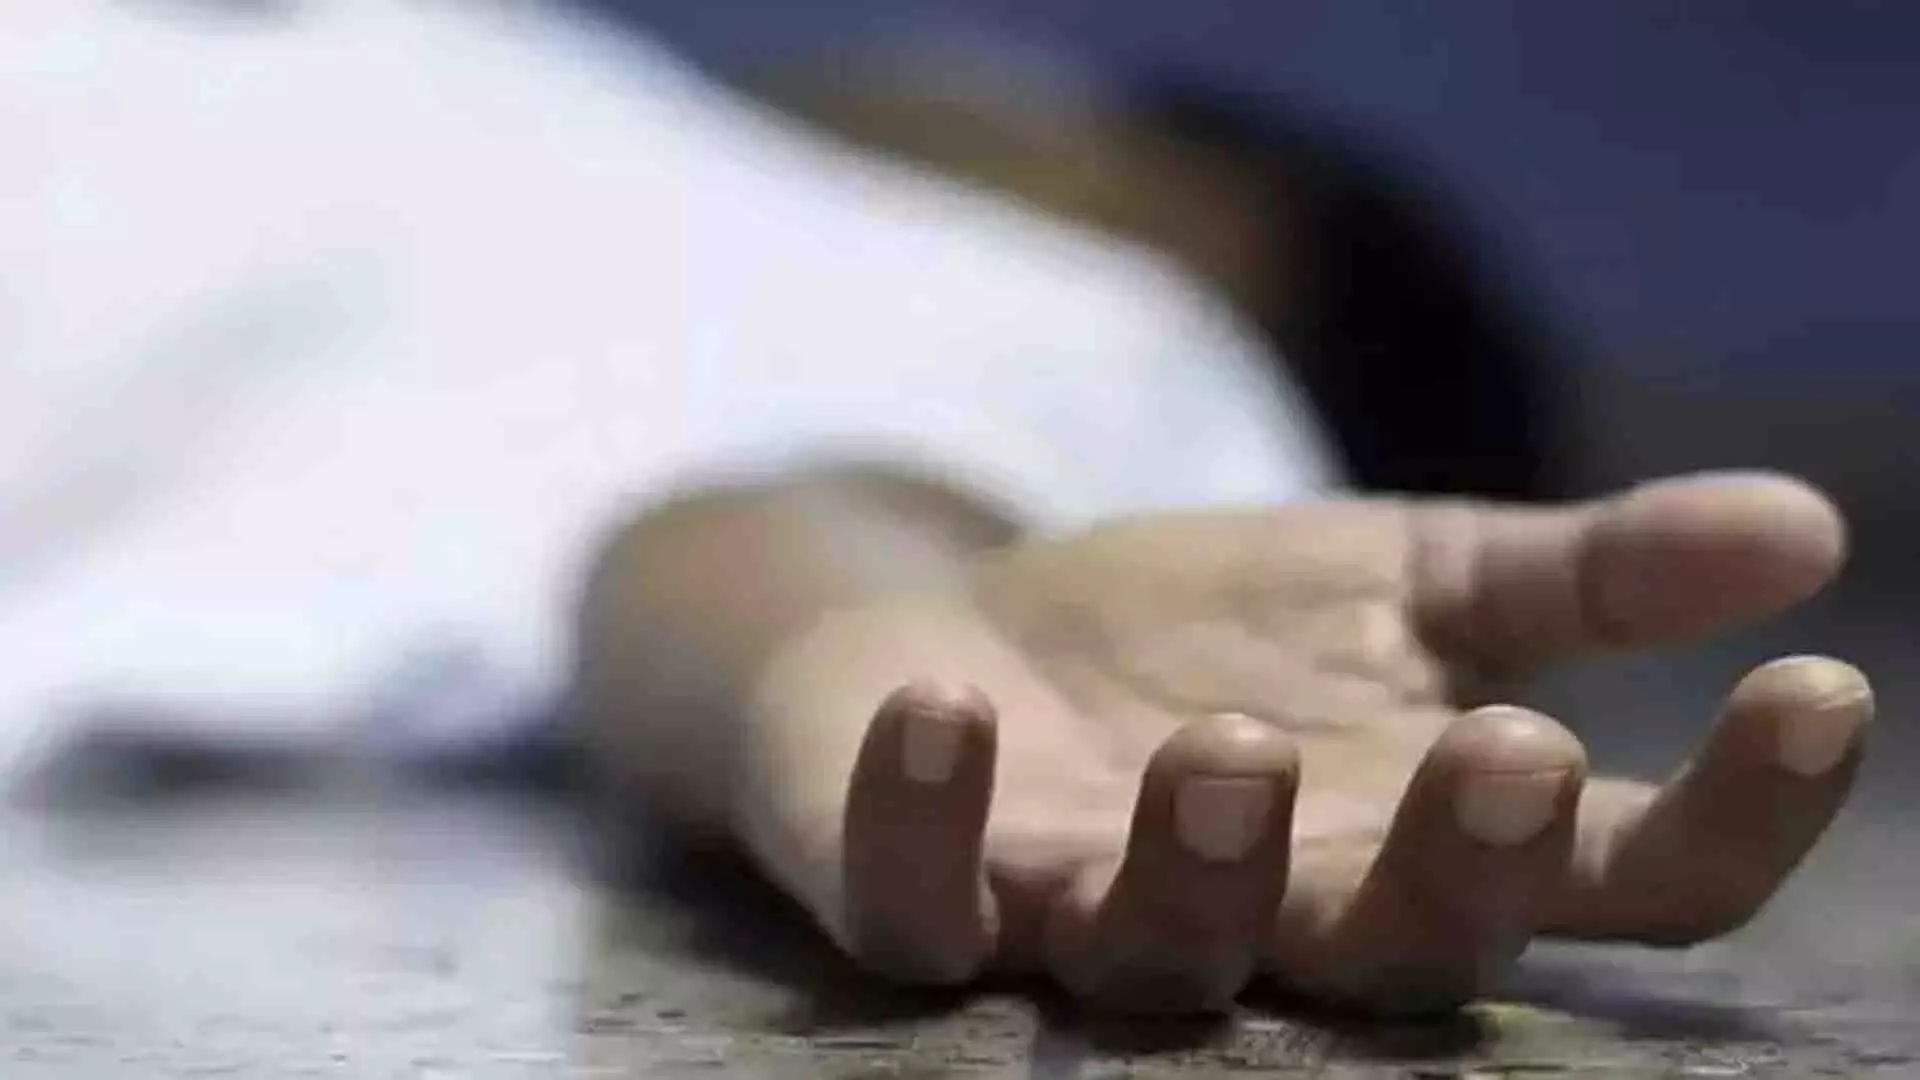 SUICIDE: महिला ने फ्लाईओवर से कूदकर दी जान, तलाक की मांग से थी परेशान